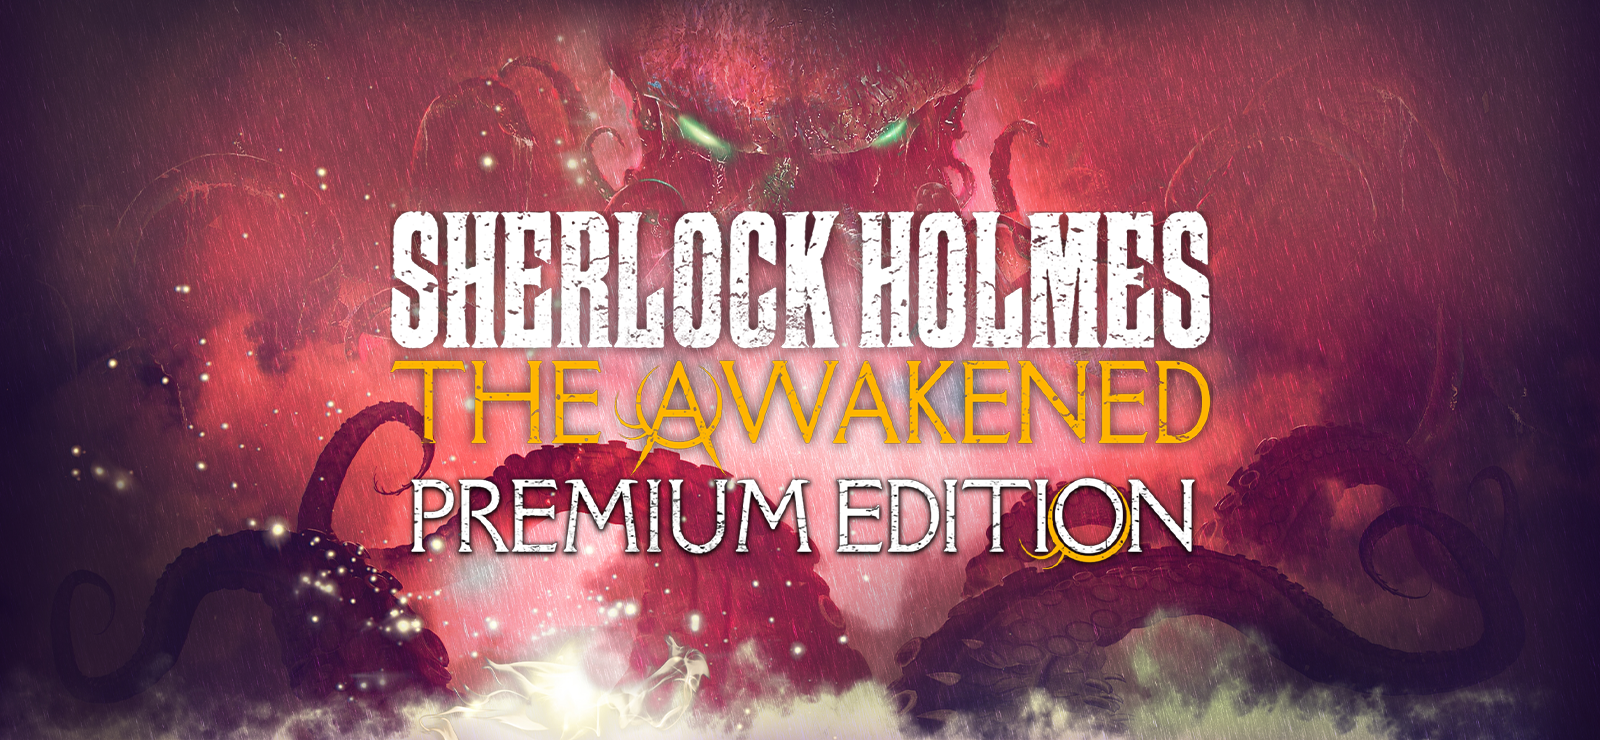 Sherlock Holmes The Awakened - Premium Edition